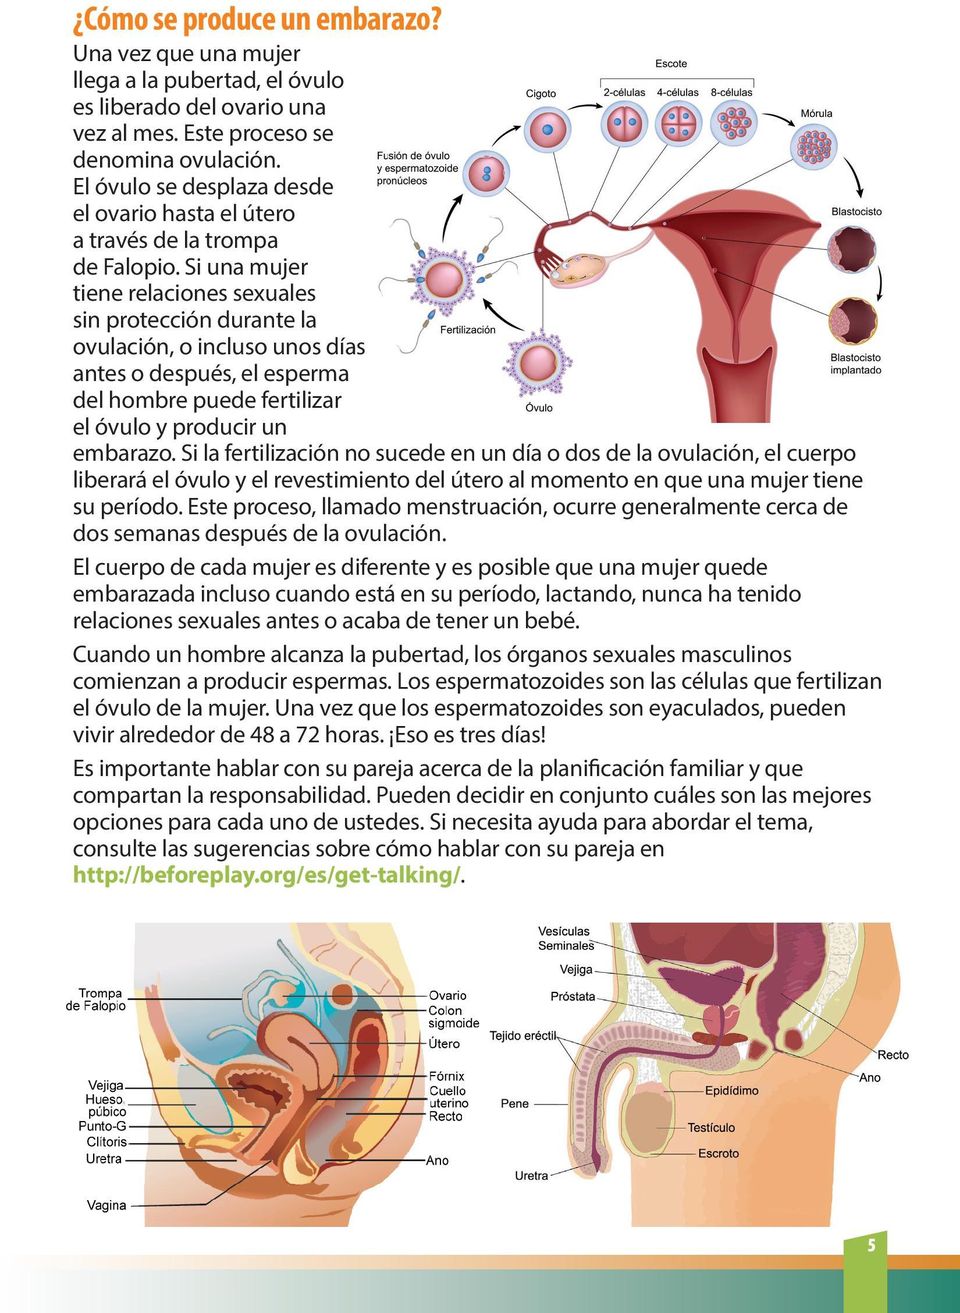 Si una mujer tiene relaciones sexuales sin protección durante la ovulación, o incluso unos días antes o después, el esperma del hombre puede fertilizar el óvulo y producir un embarazo.